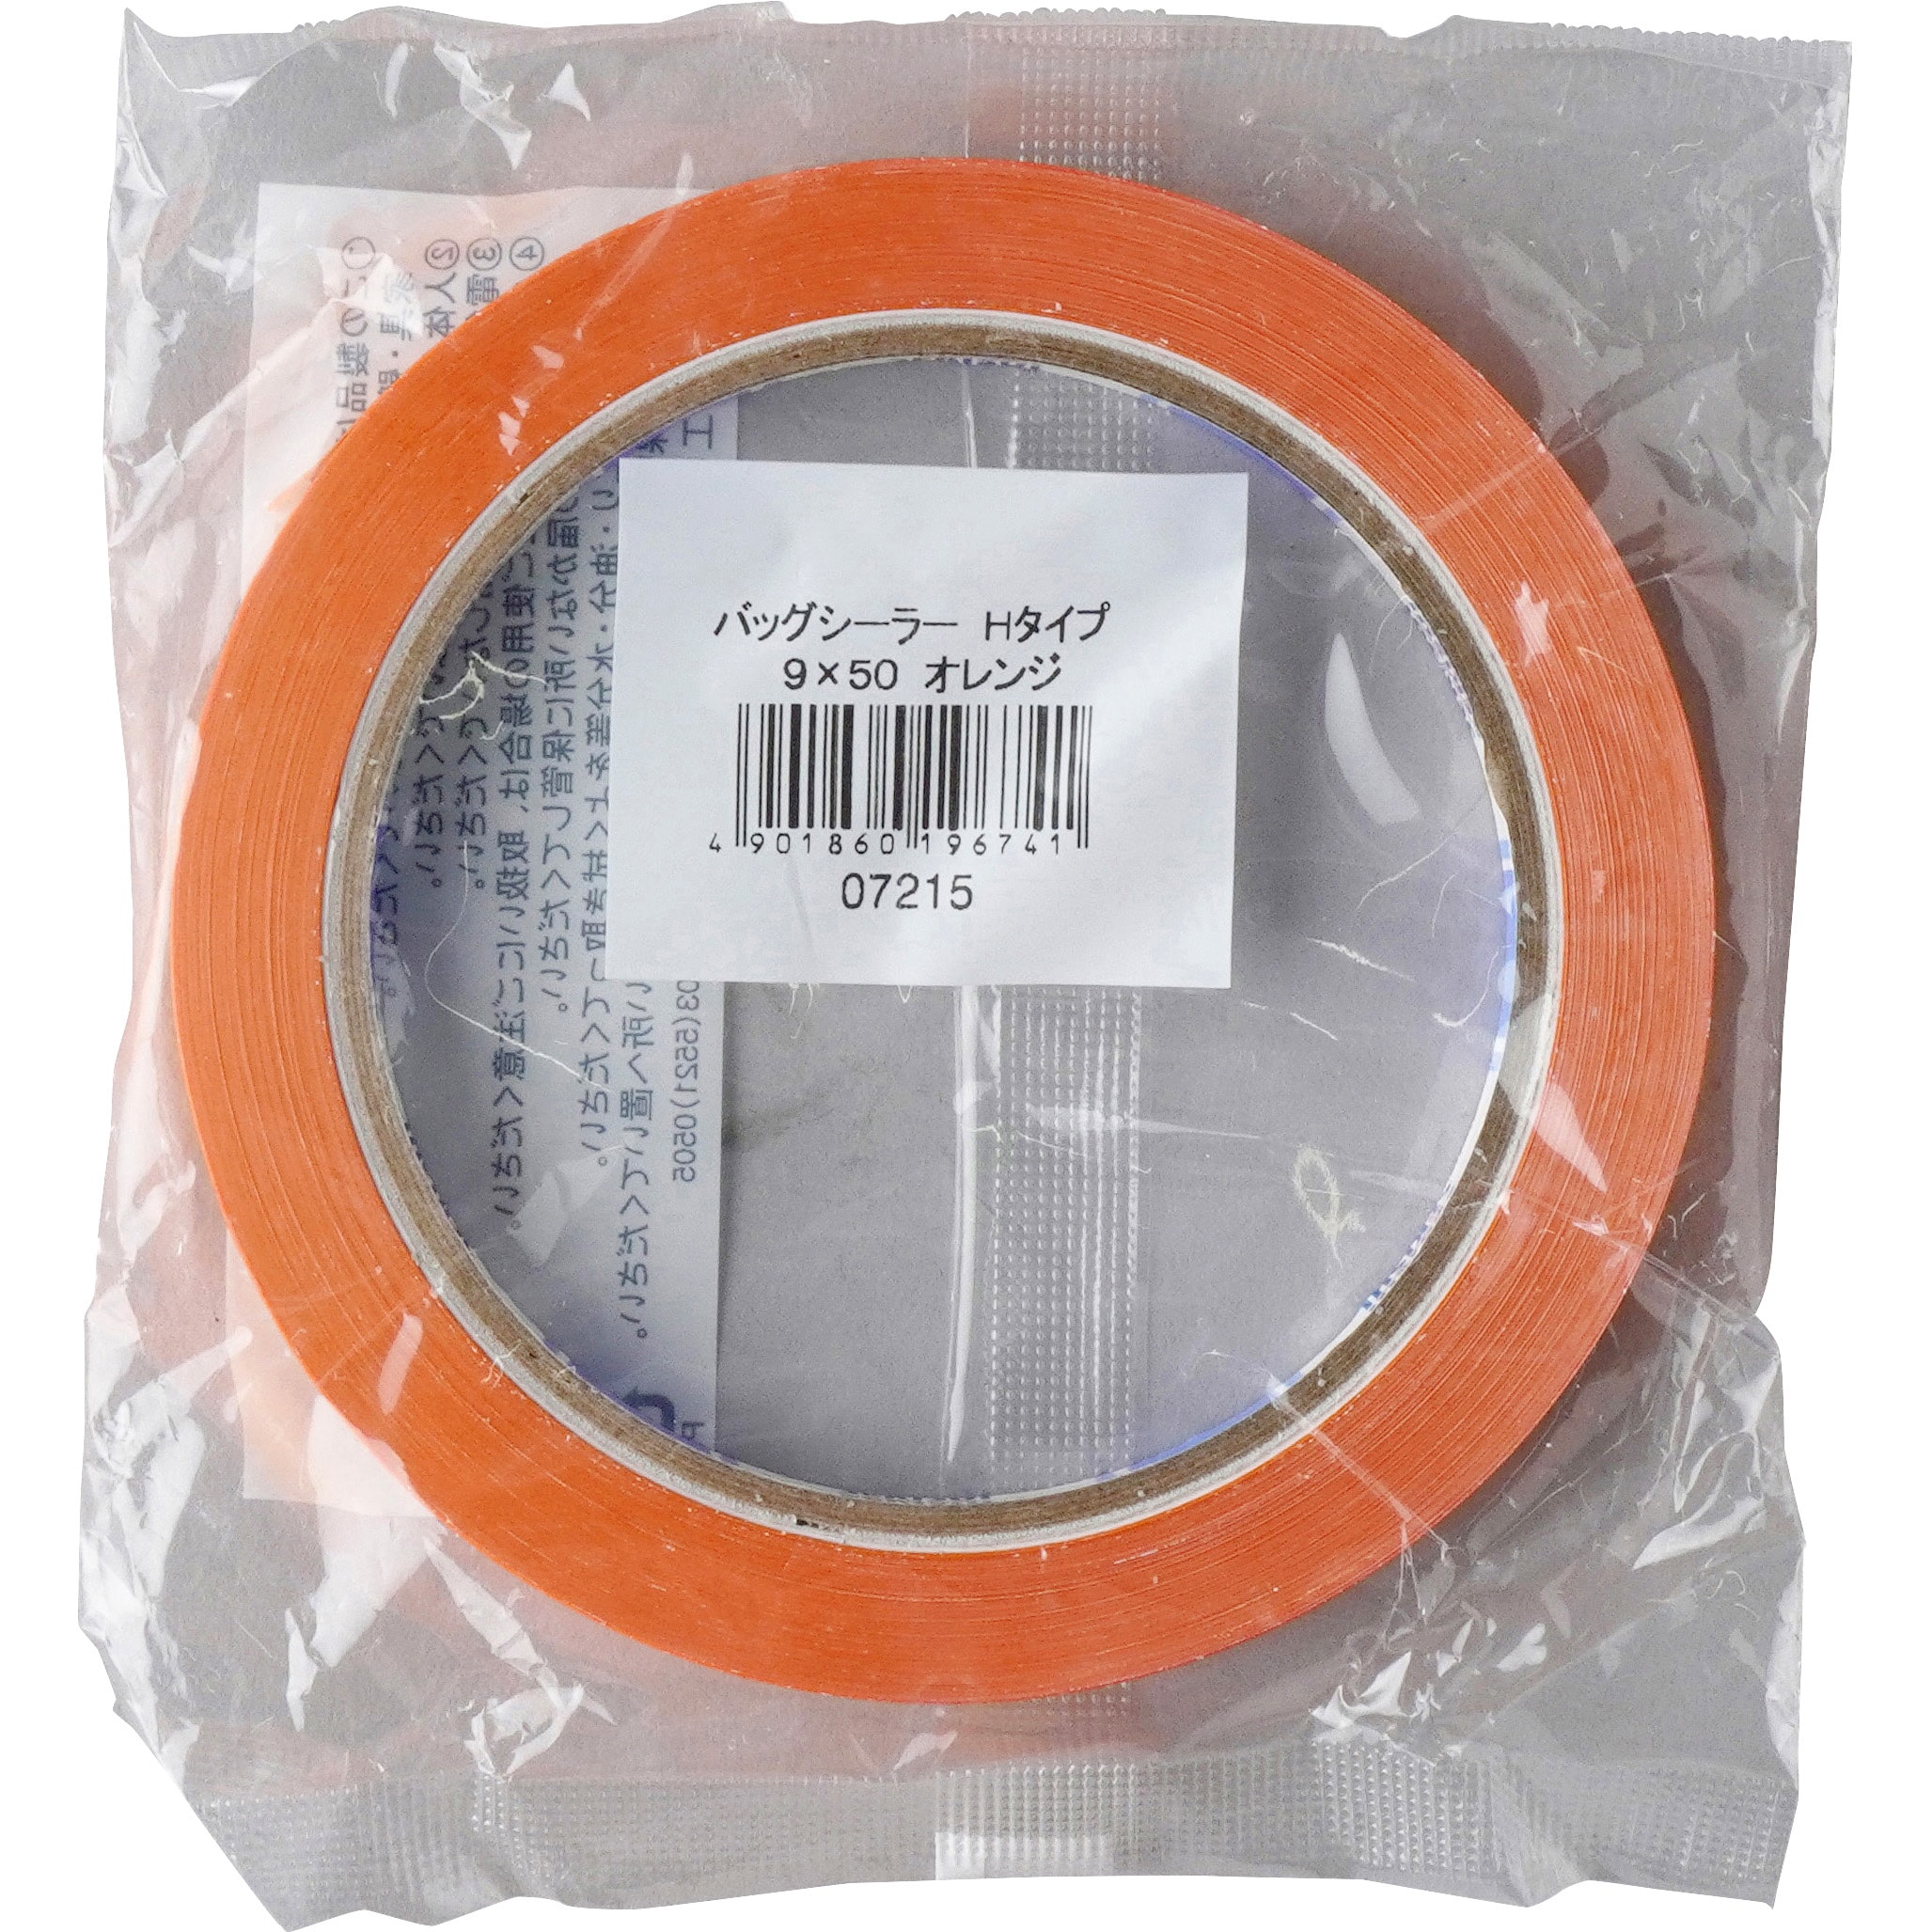 ケース販売積水化学工業 バッグシーラーテープ Hタイプ 9×50 やさい緑 002000021 1ケース(200巻入) - 2